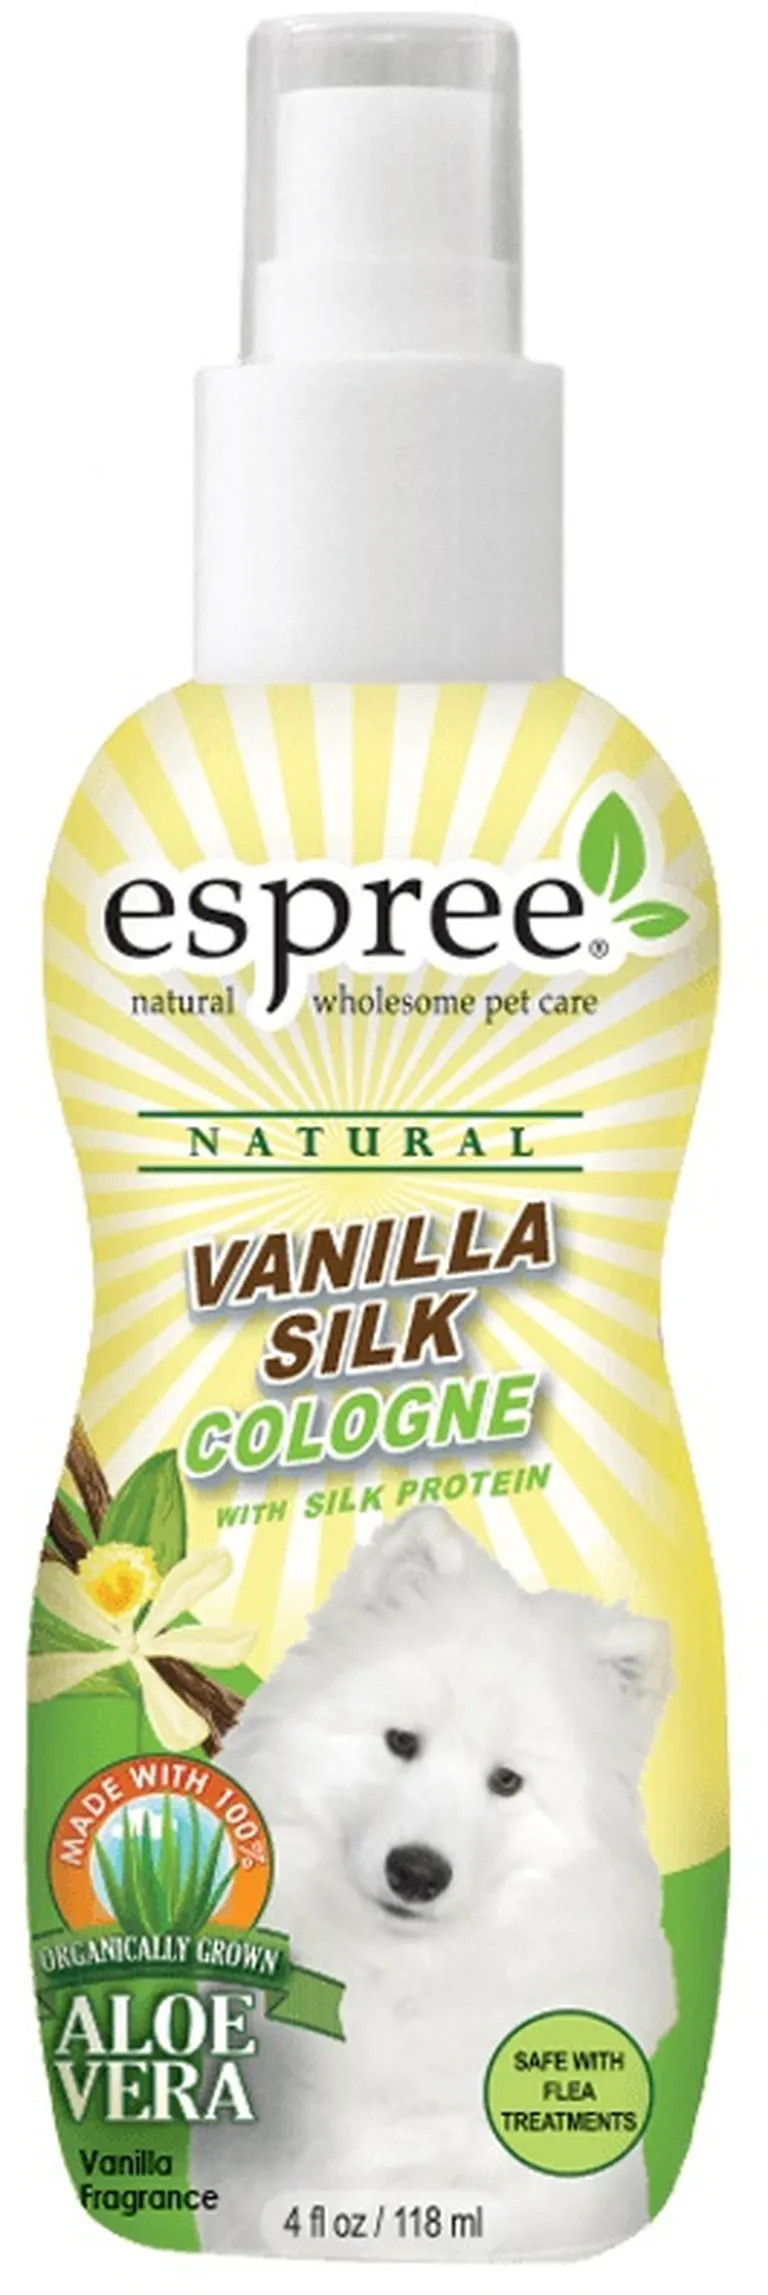 Espree Vanilla Silk Cologne for Dogs Photo 1